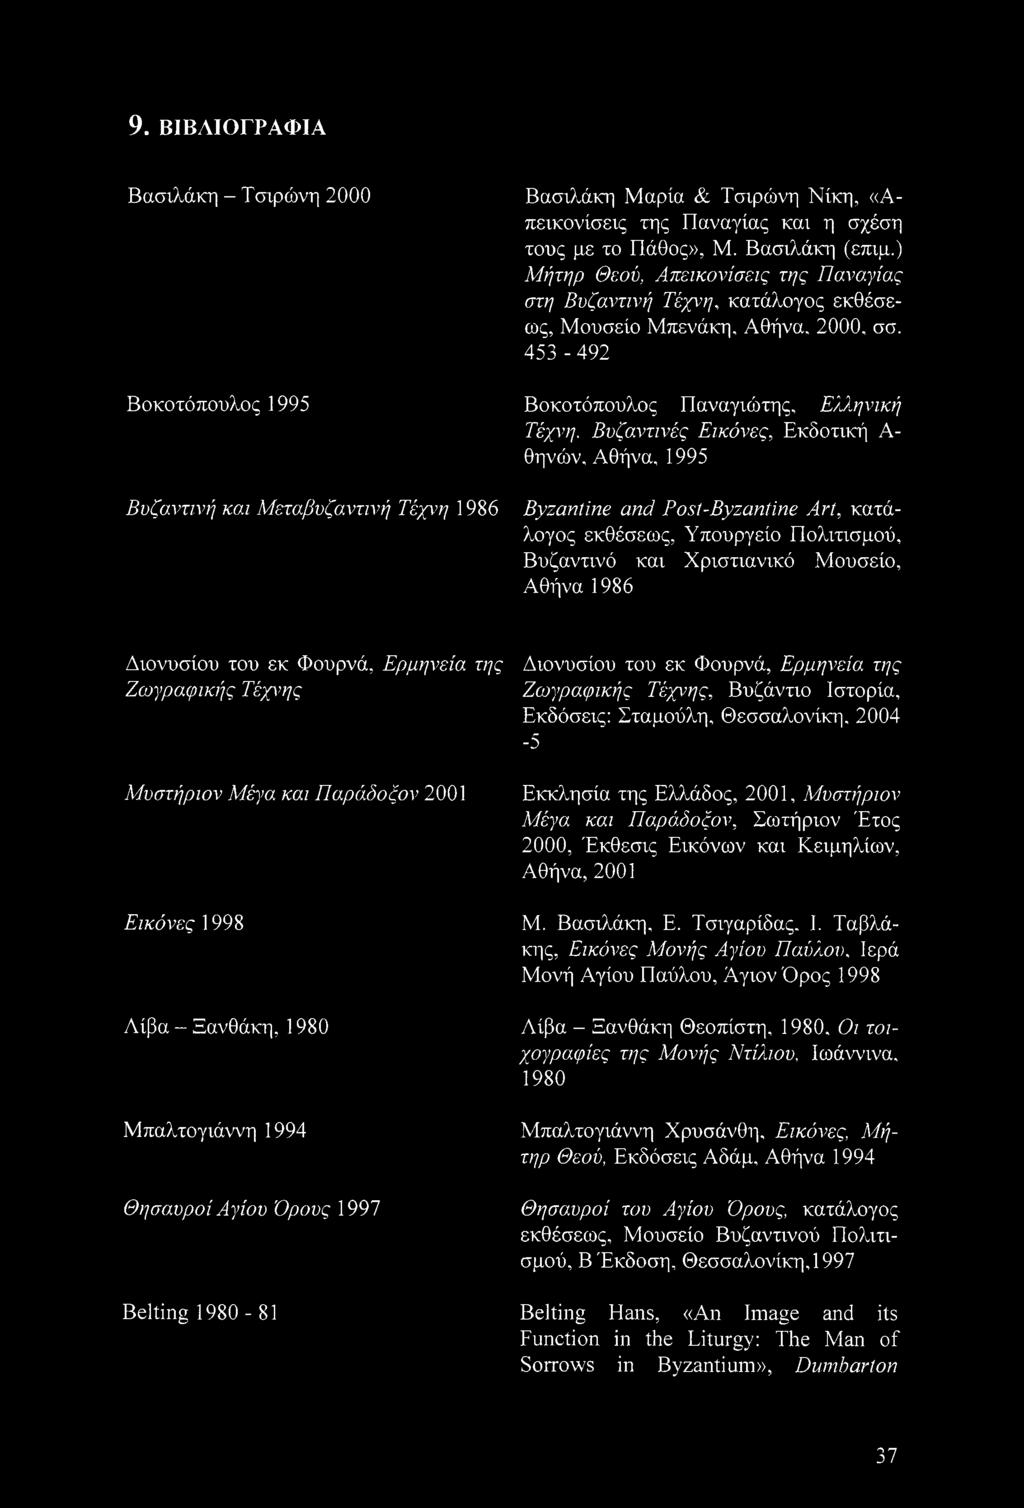 Βυζαντινές Εικόνες, Εκδοτική Α θηνών, Αθήνα, 1995 Byzantine and Post-Byzantine Art, κατάλογος εκθέσεως, Υπουργείο Πολιτισμού, Βυζαντινό και Χριστιανικό Μουσείο, Αθήνα 1986 Διονυσίου του εκ Φουρνά,